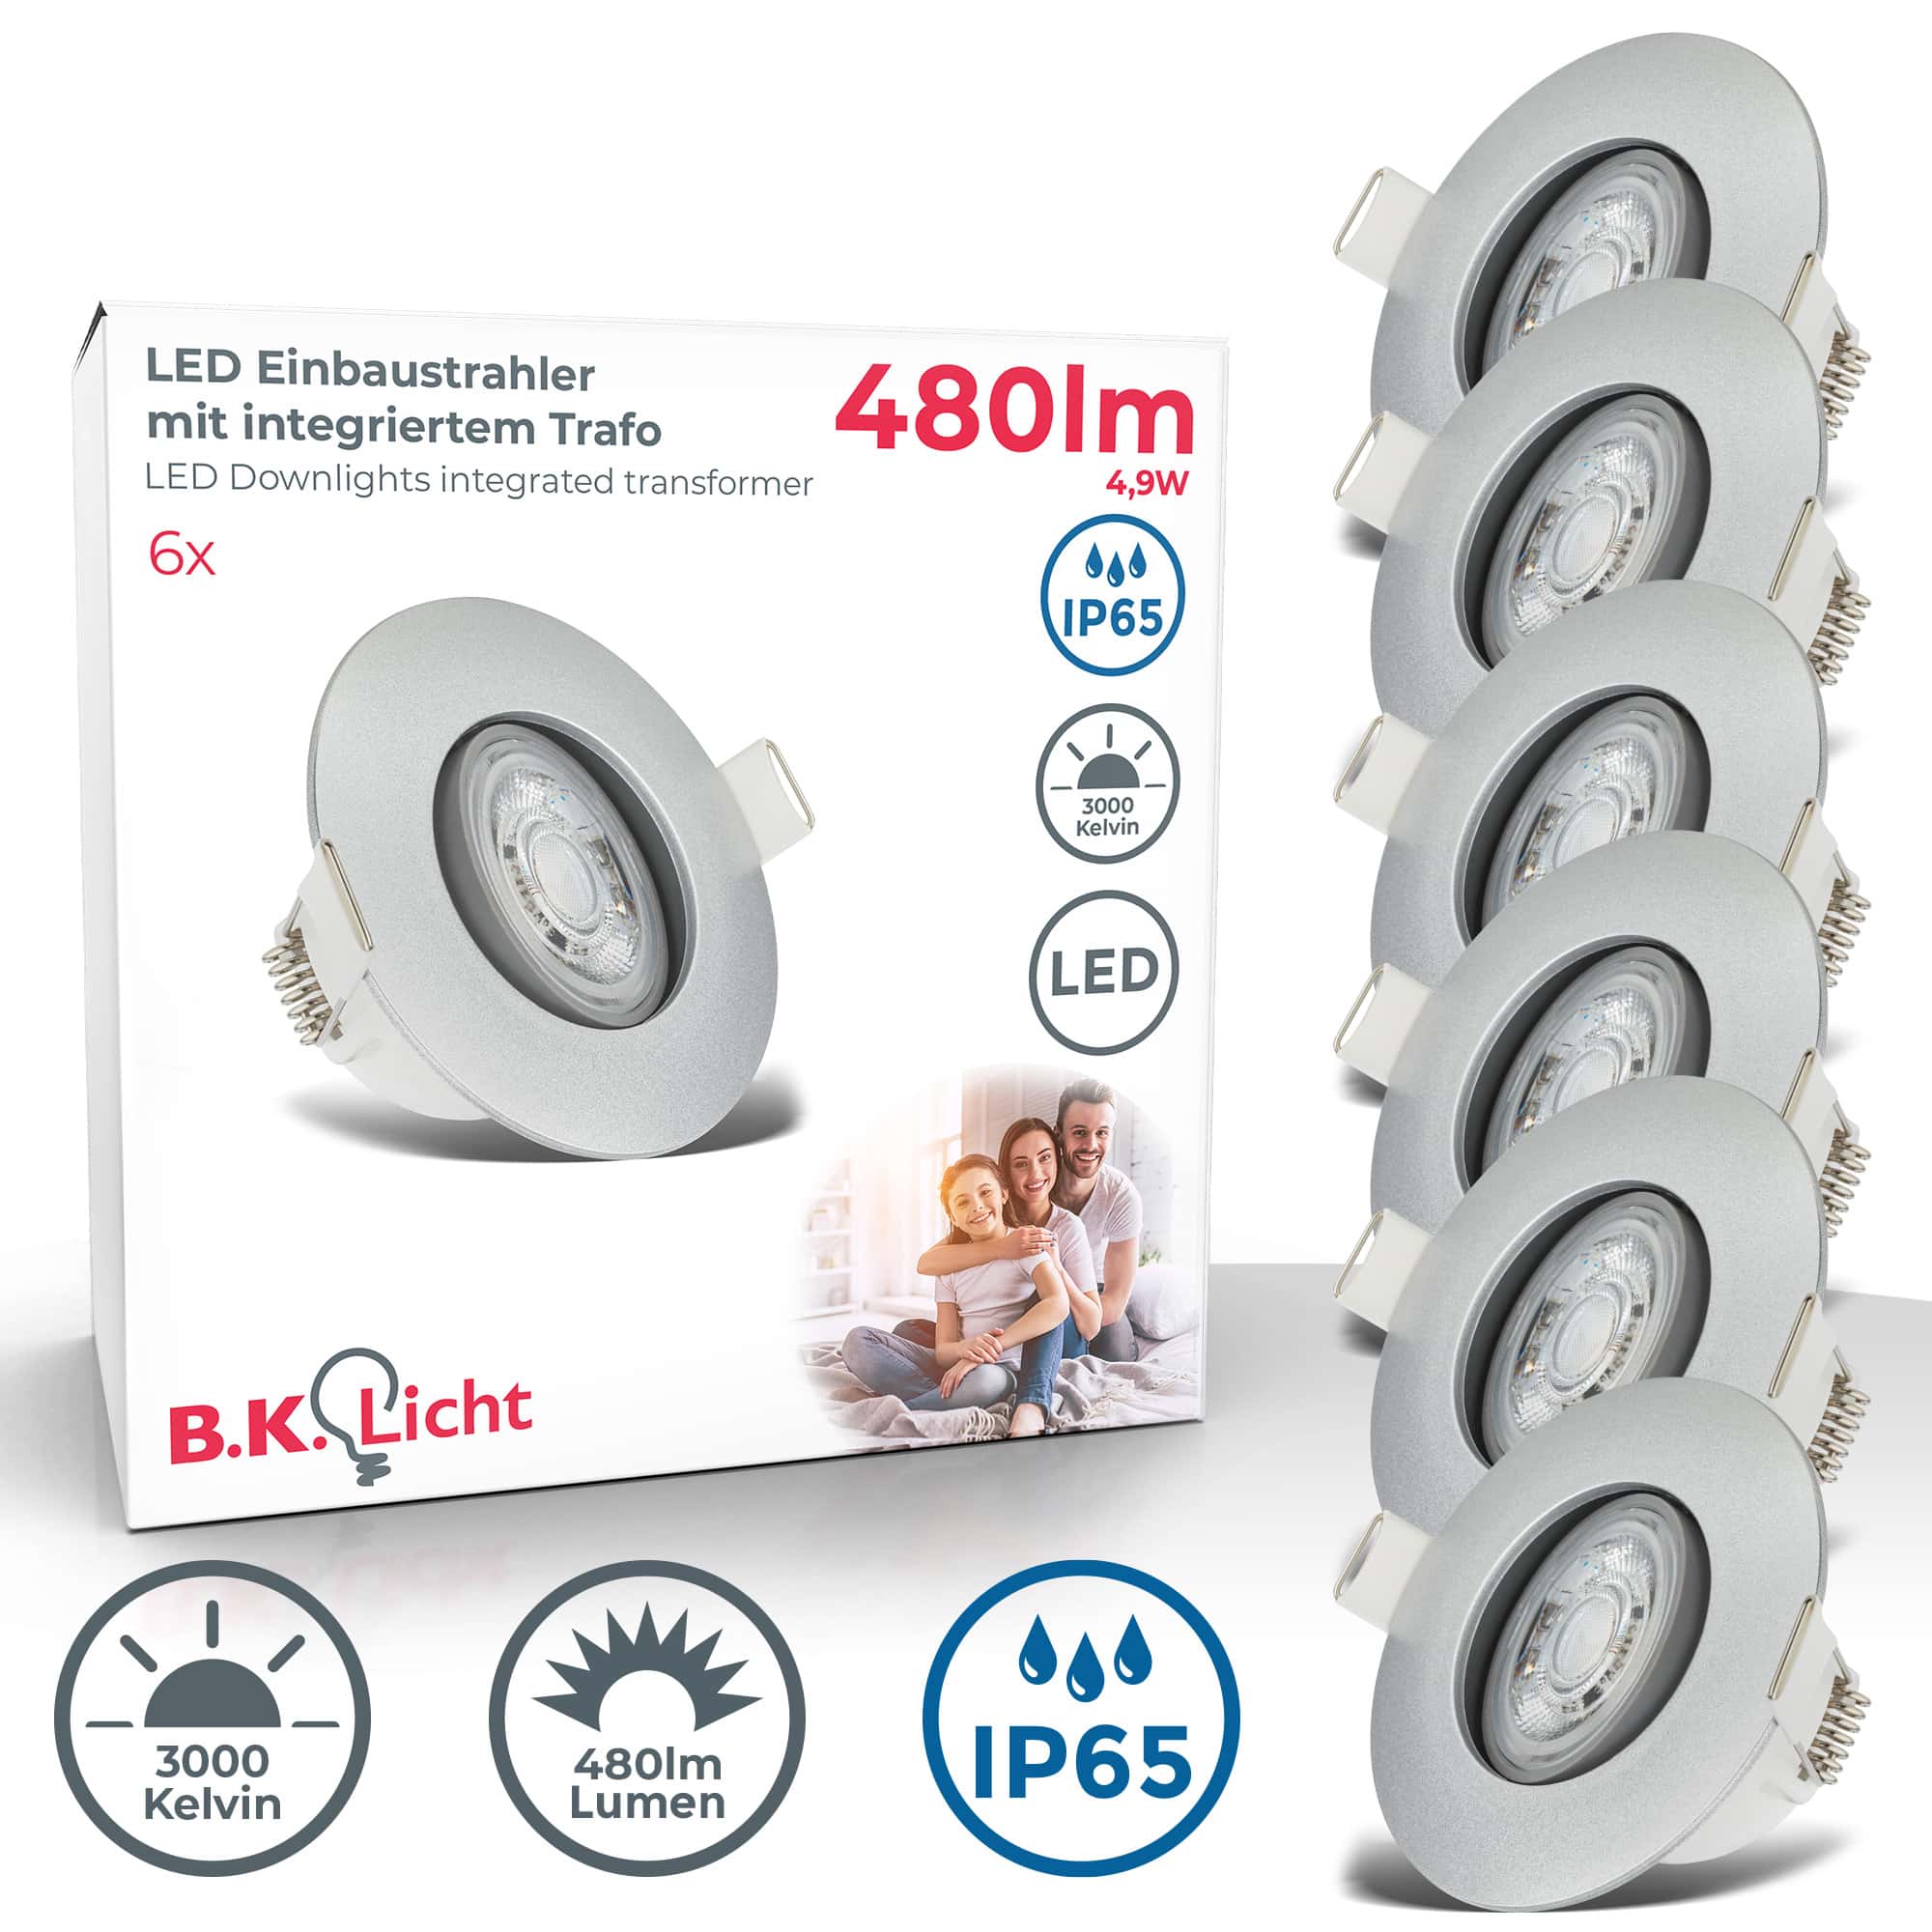 LED Einbaustrahler wasserfest Ø90mm - 6er SET - LED Einbauleuchten schwenkbar Badezimmer IP65 230V 5W 480lm warmweiße Lichtfarbe | Chrom-matt - 1